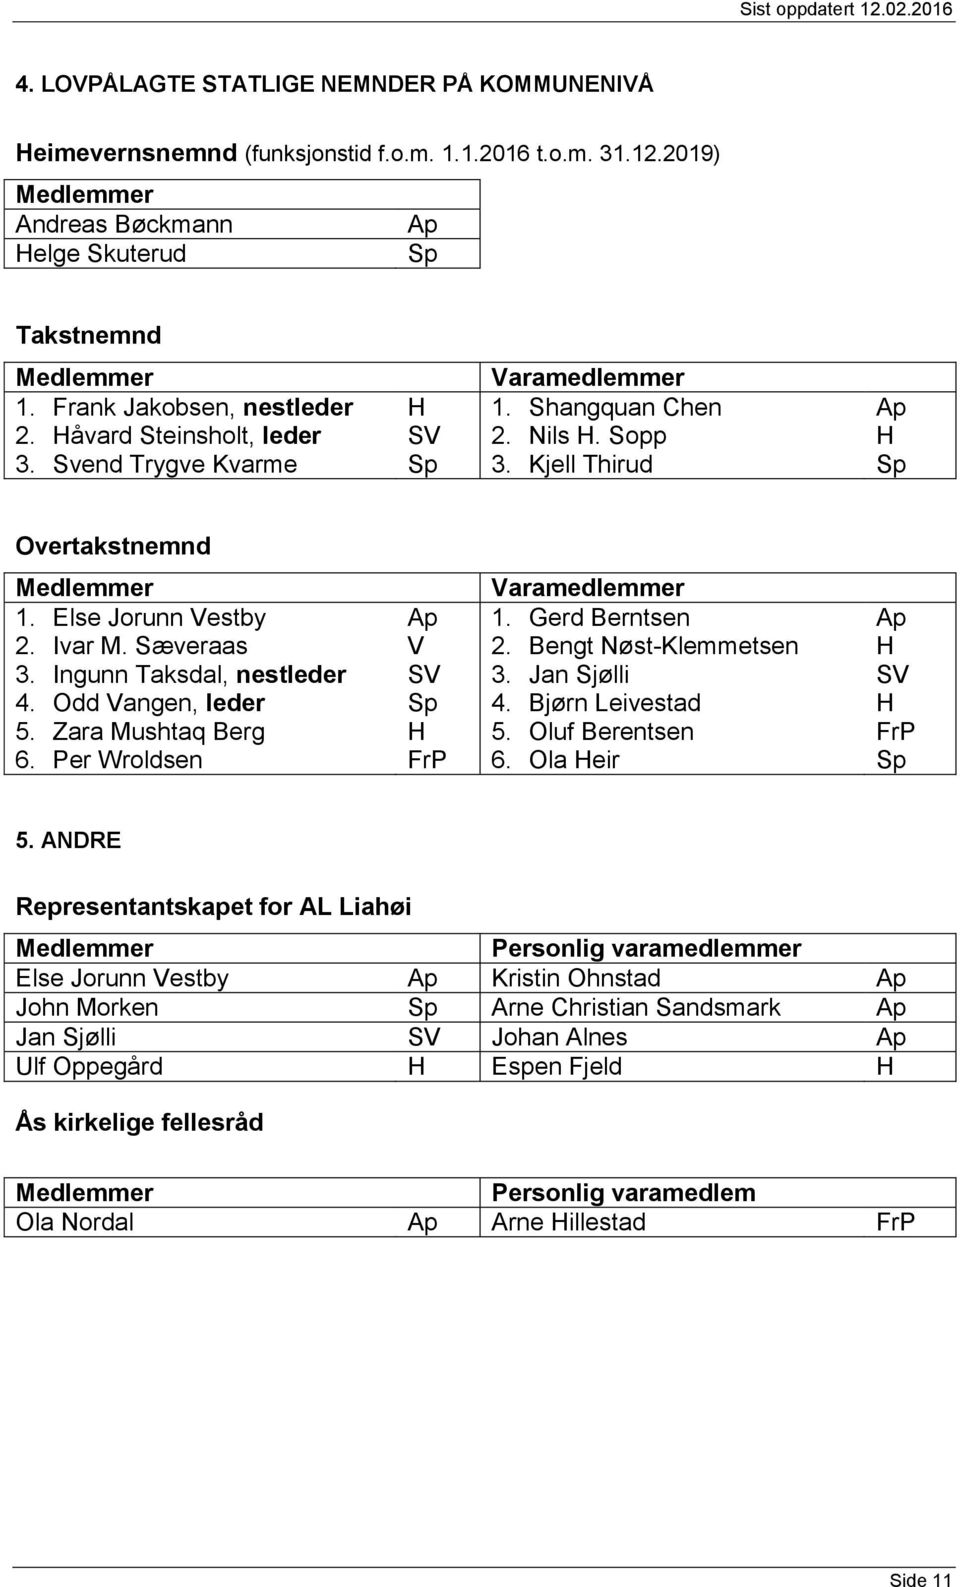 Ingunn Taksdal, nestleder 4. Odd angen, leder 5. Zara Mushtaq Berg 6. Per Wroldsen aramedlemmer 1. Gerd Berntsen 2. Bengt Nøst-Klemmetsen 3. Jan Sjølli 4. Bjørn Leivestad 5. Oluf Berentsen 6.